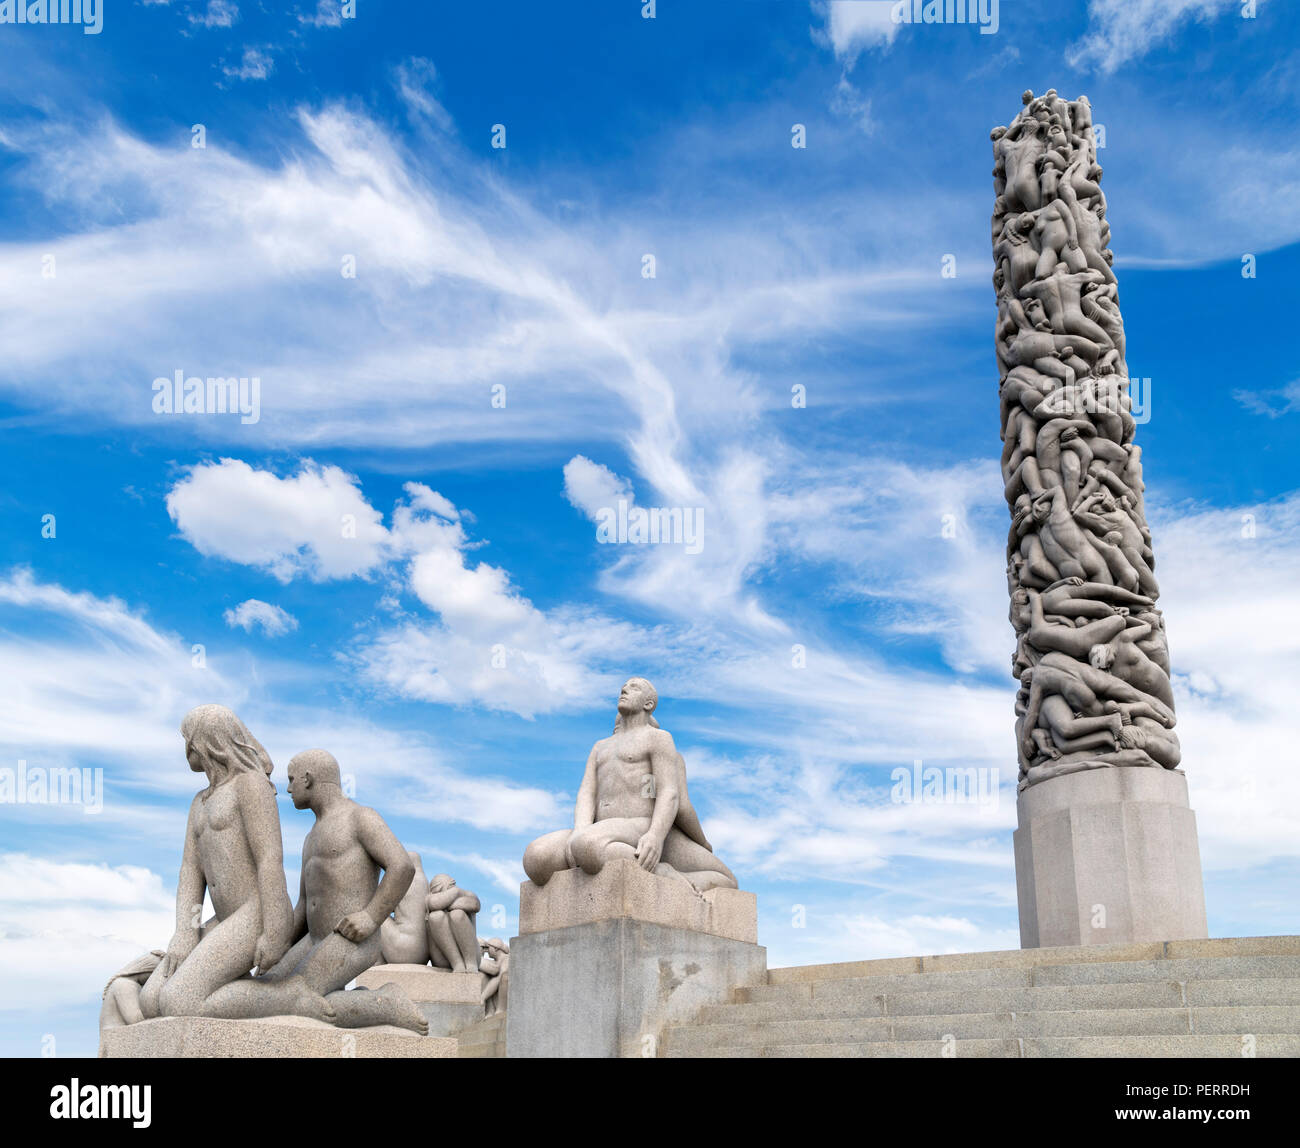 Parc de Sculptures de Vigeland, Oslo. Le monolithe et d'autres sculptures de Gustav Vigeland, sculpteur norvégien, Vigelandsparken, Frognerpark, Oslo, Norvège Banque D'Images